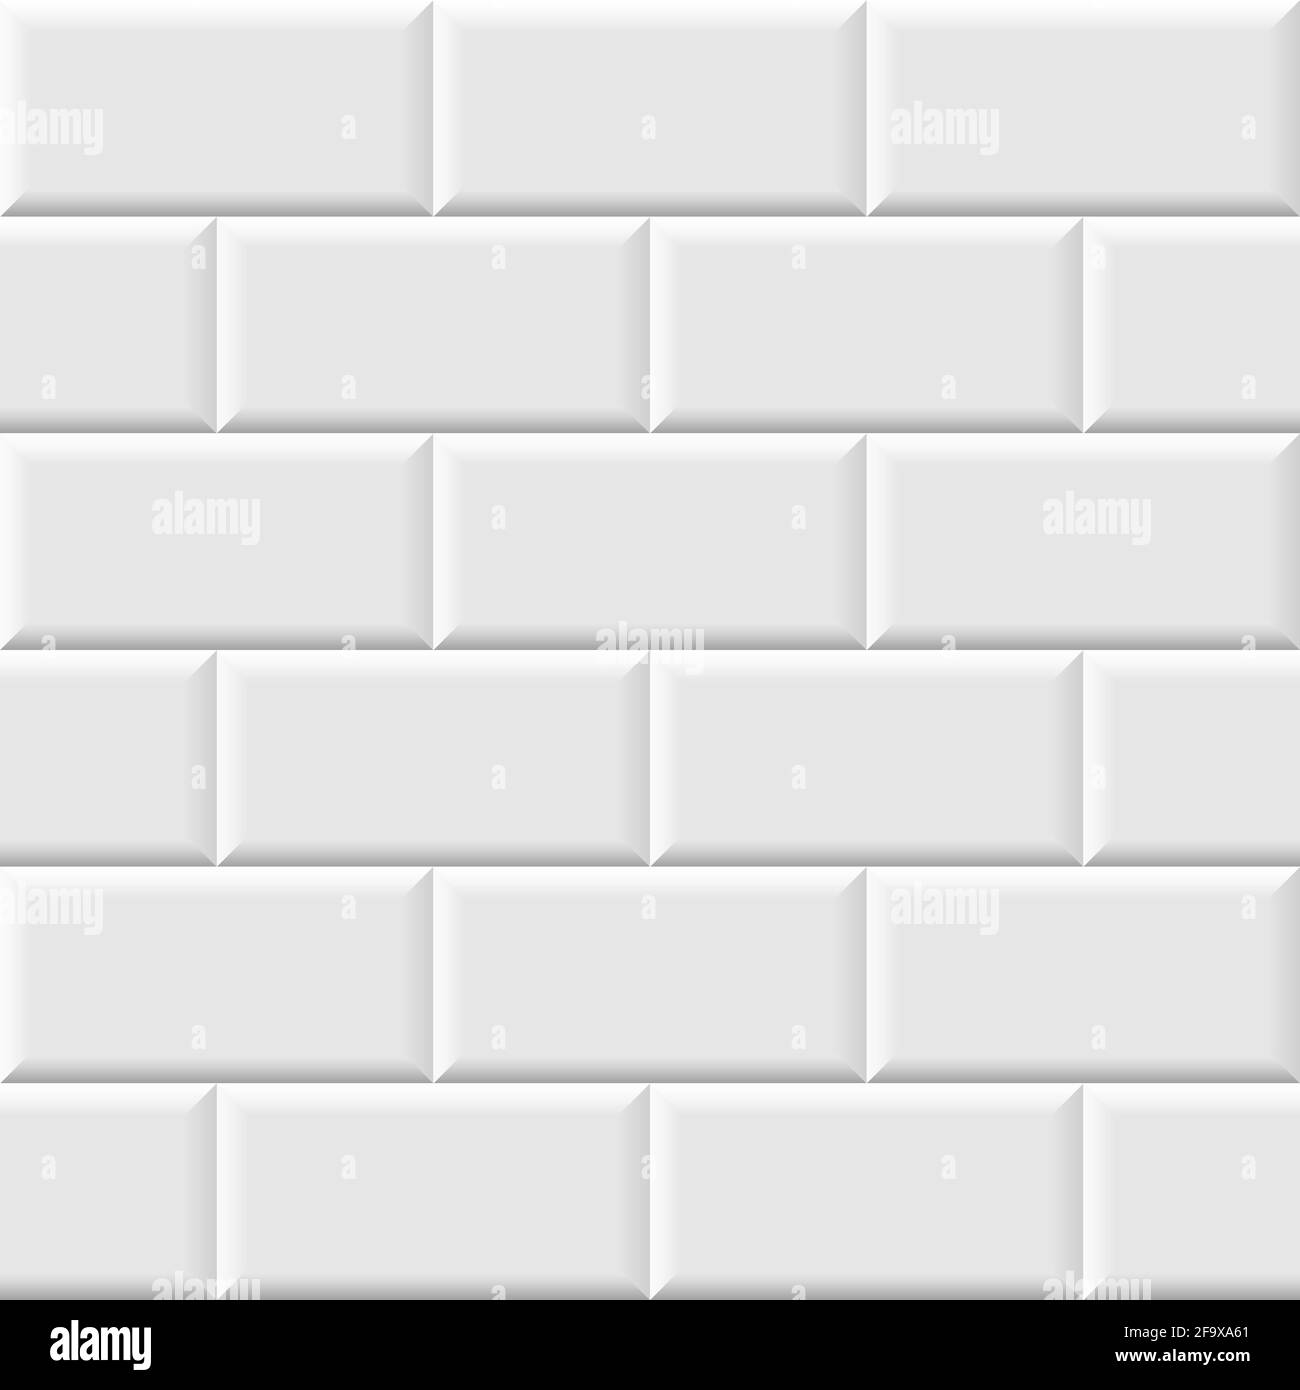 White metro tiles seamless background. Subway brick pattern for